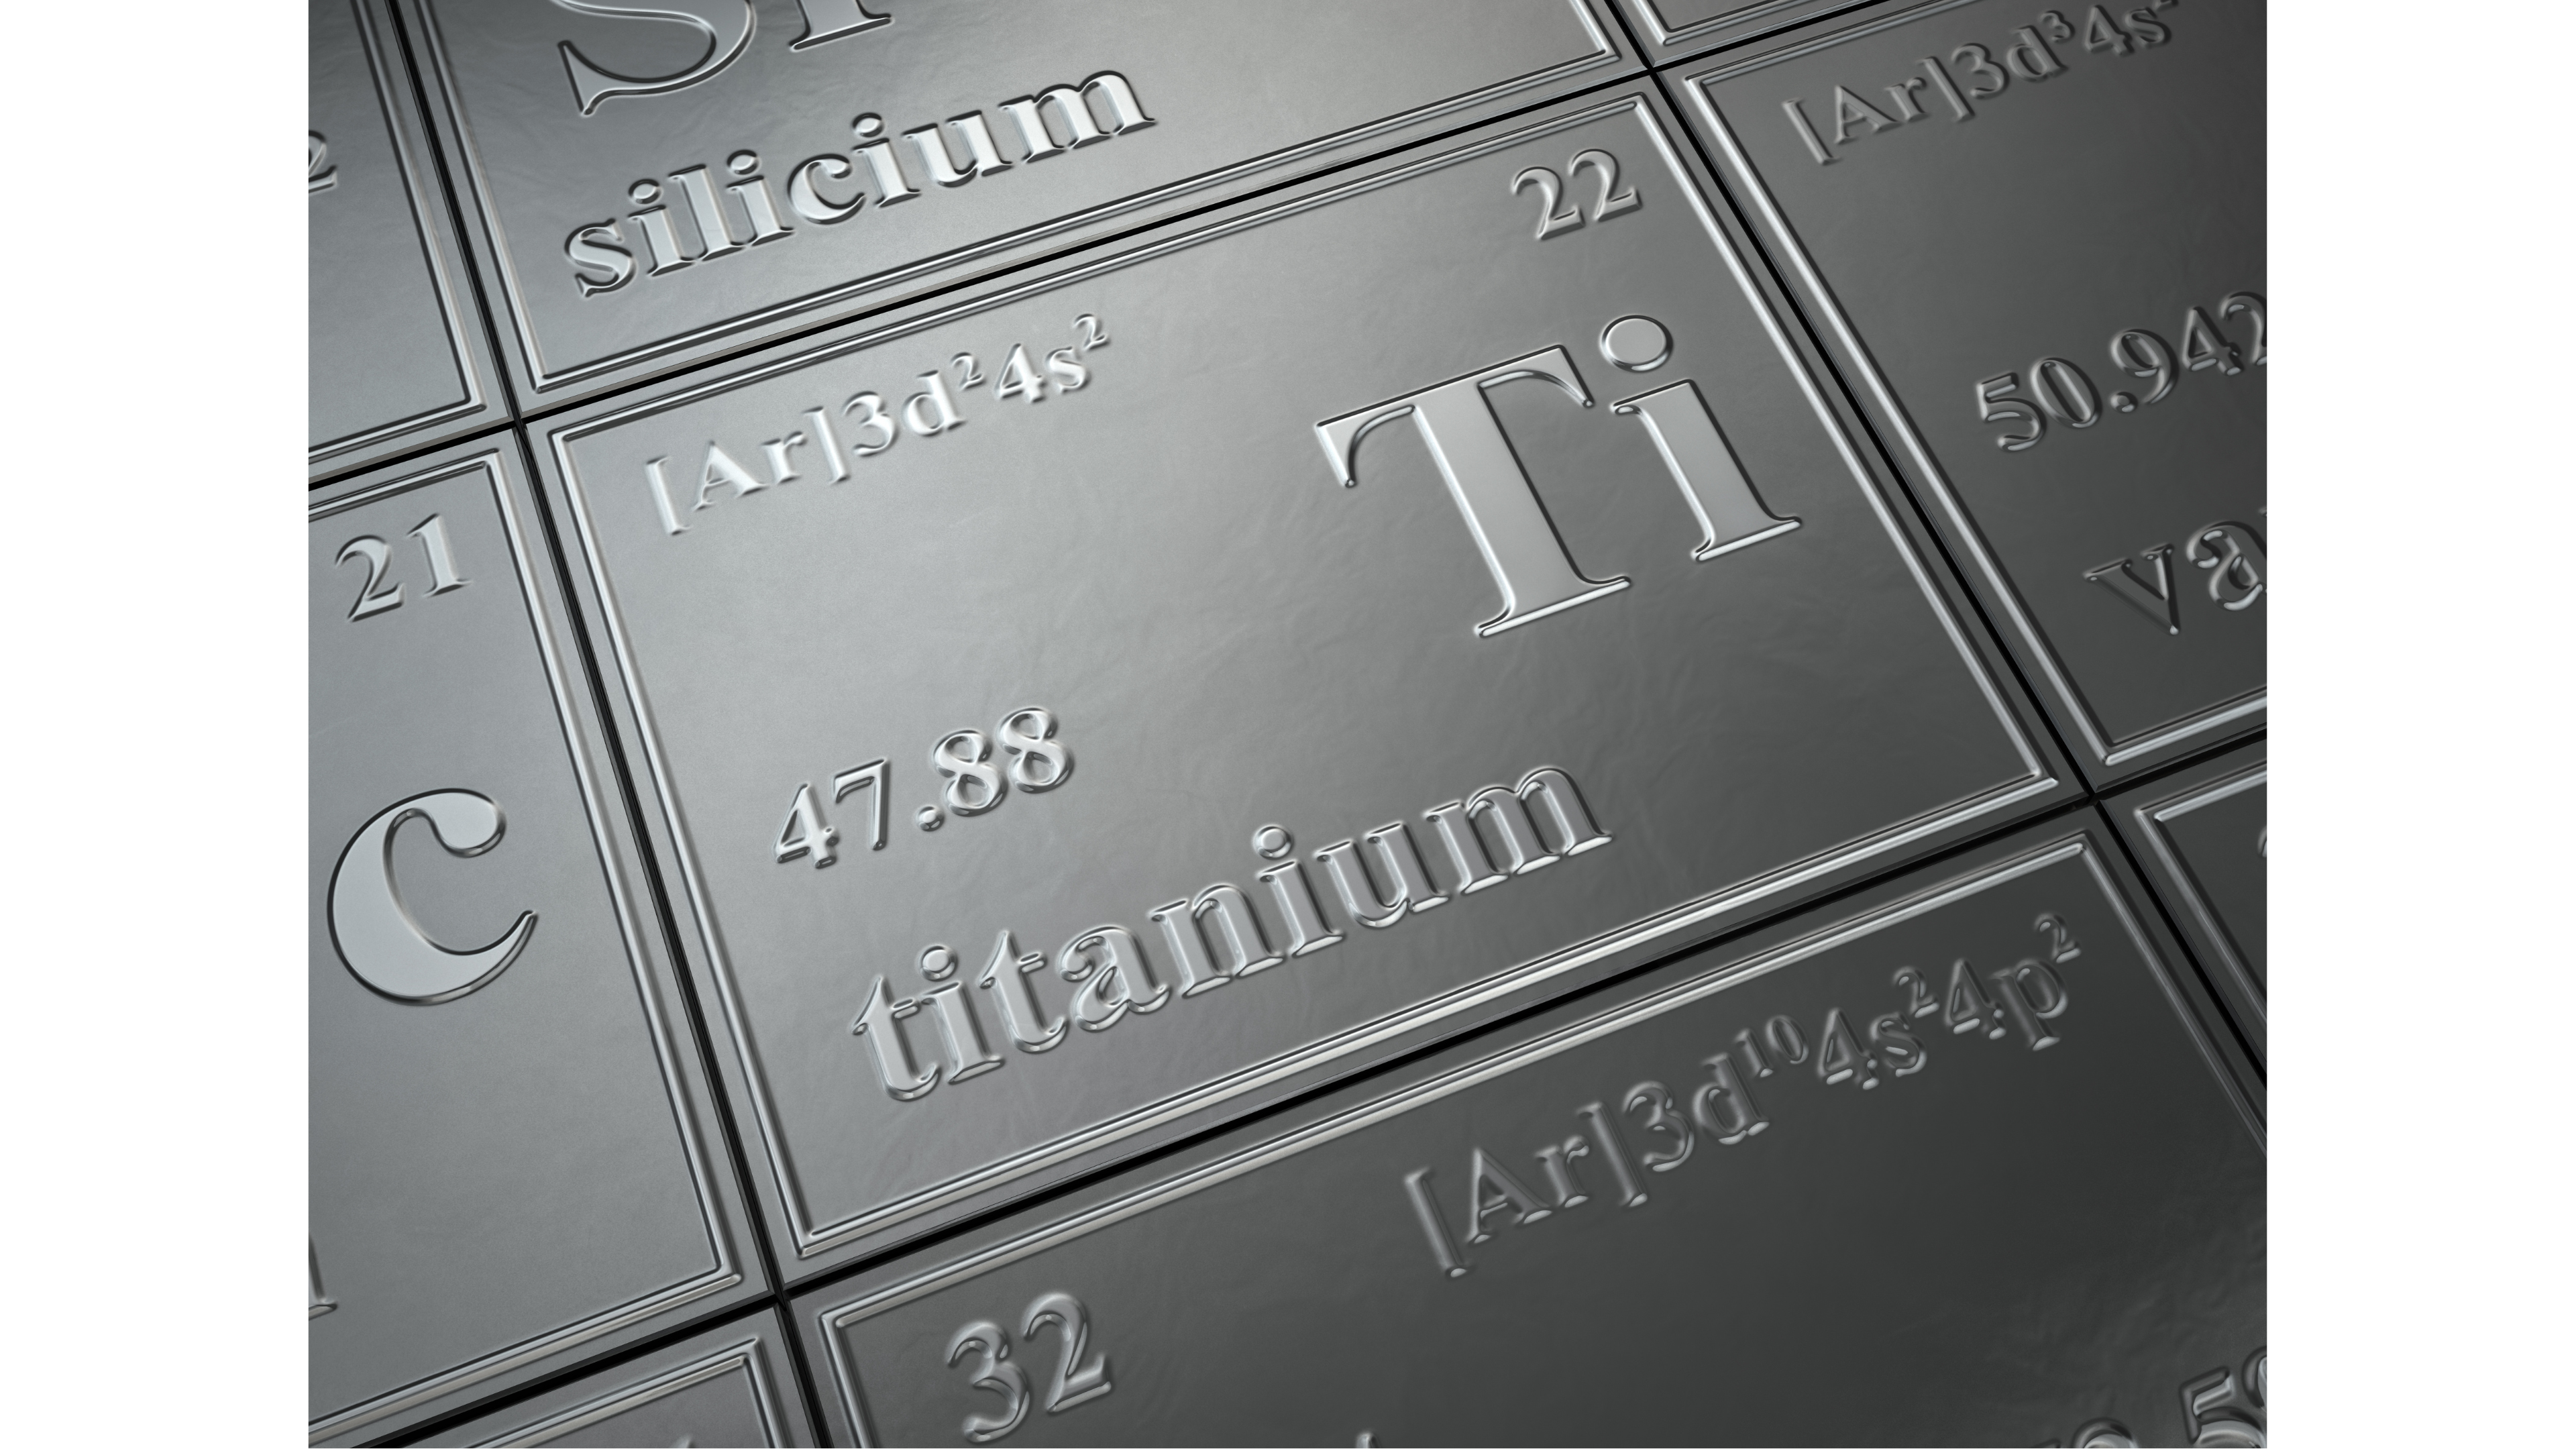 Leskeät ja ainutlaatuiset titaanin ominaisuudet: Tutustu monipuoliseen materiaaliin

